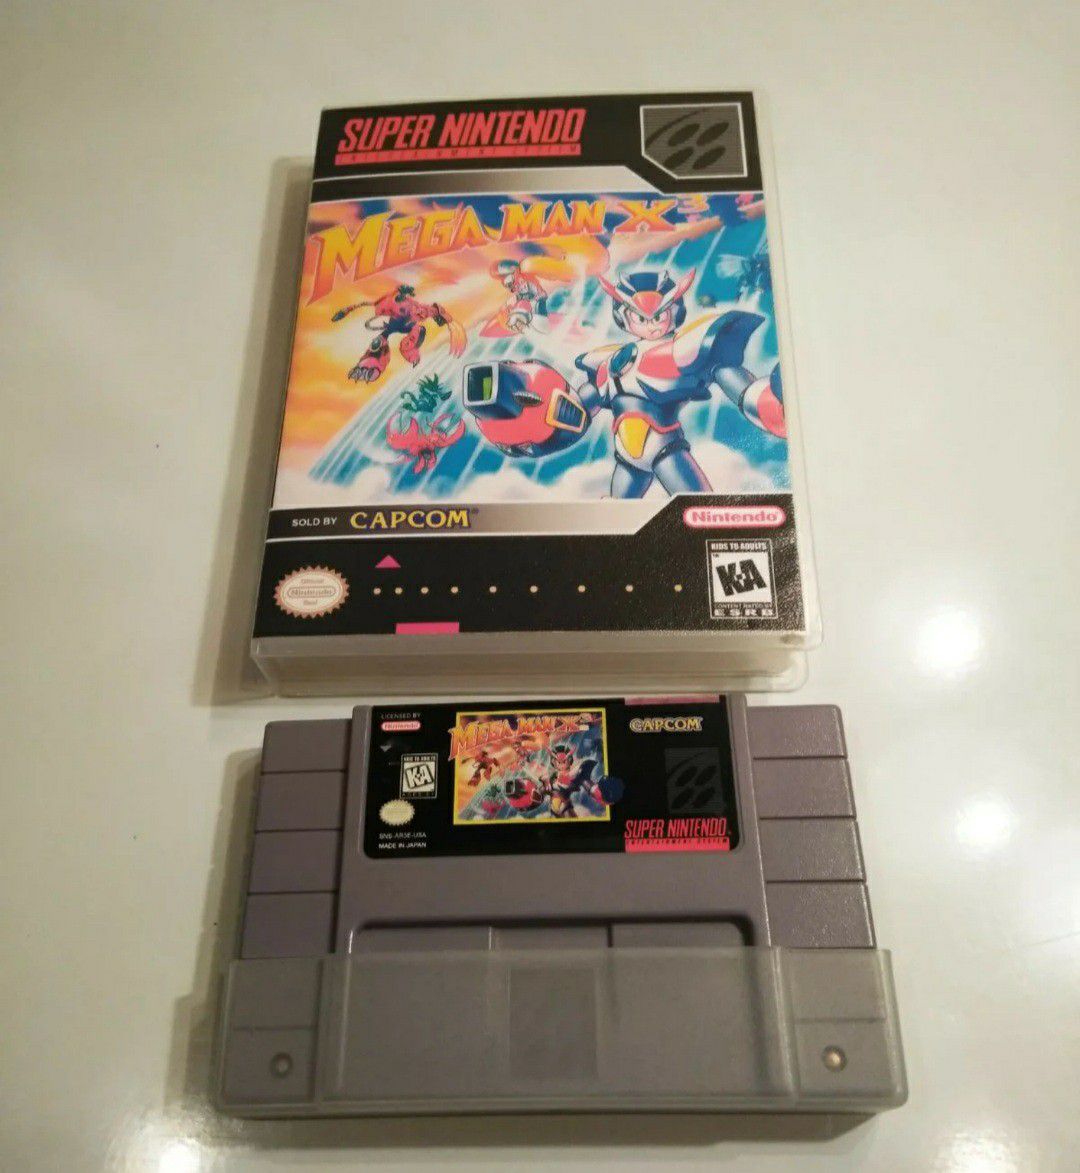 Super Nintendo Mega man x3